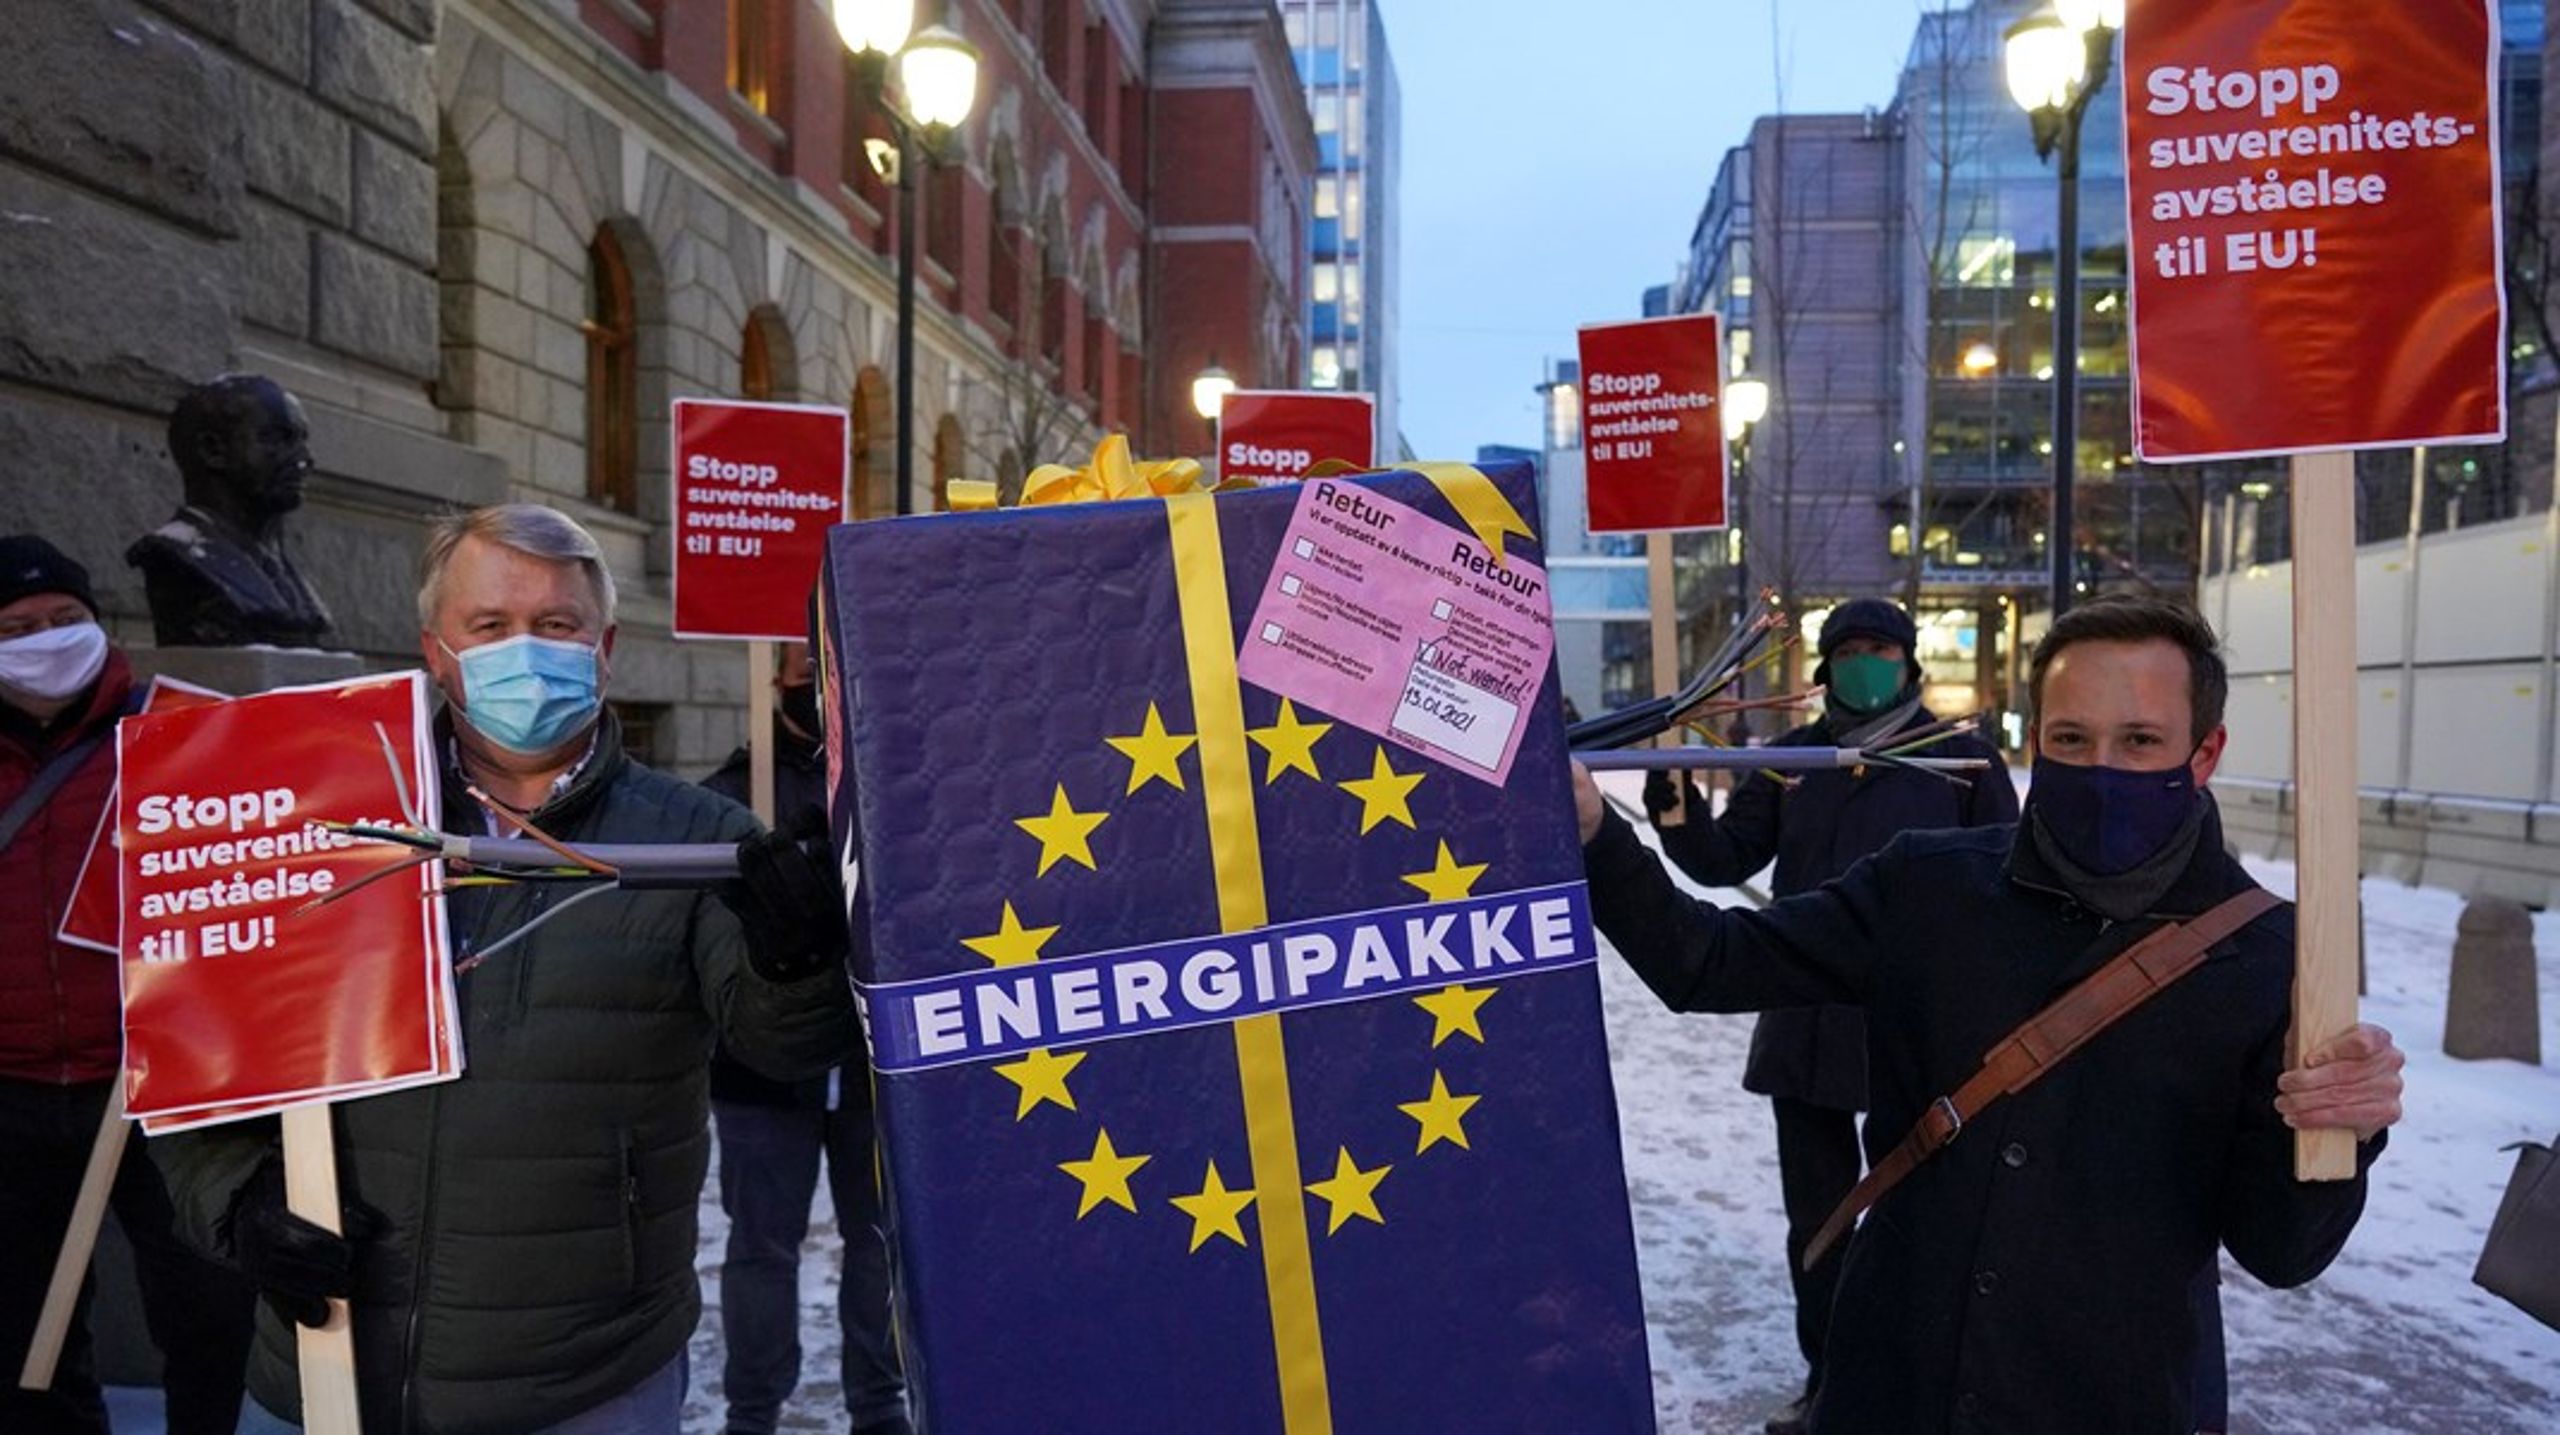 Mandag vil Borgarting lagmannsrett behandle ankesaken om ACER. I 2021 aksjonerte Nei til EU utenfor Høyesterett. Oslo tingrett dømte at Stortinget ikke hadde brutt grunnloven da de vedtok EUs tredje energipakke i 2018.